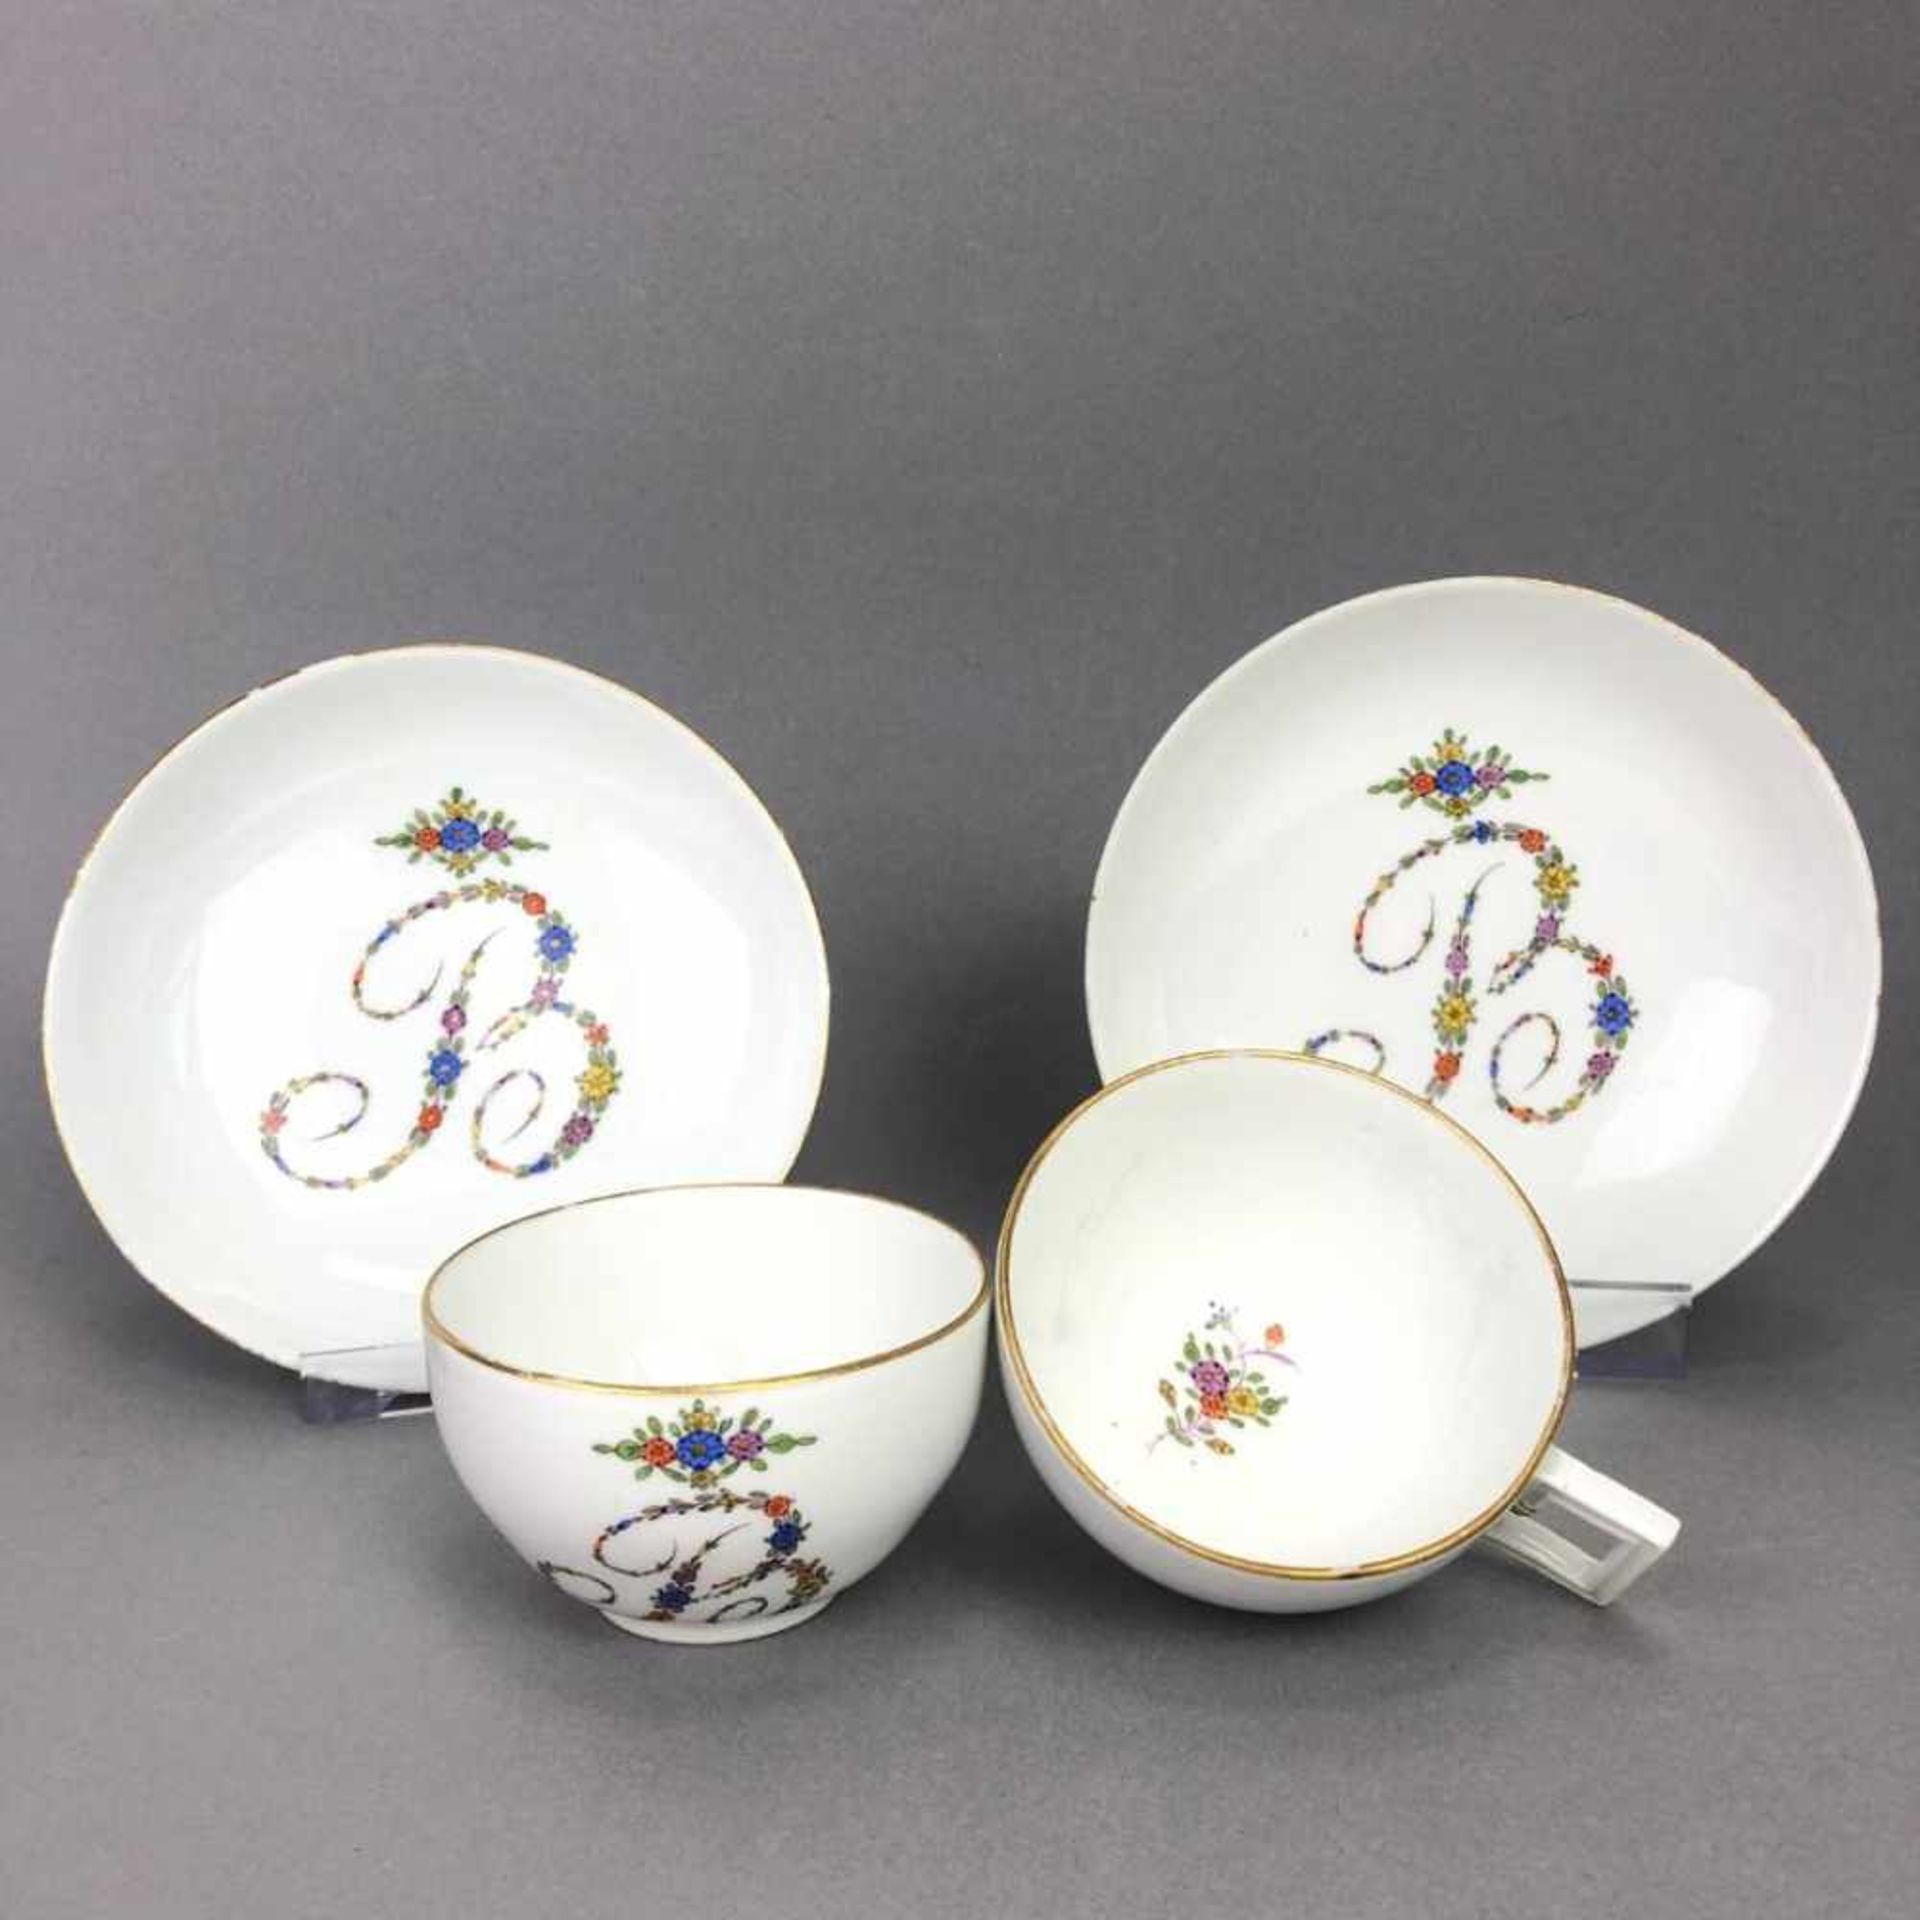 Paar Tassen: Meissen Porzellan, Marcolini Zeit 1774 - 1817.Porzellan weiß glasiert, Dekor